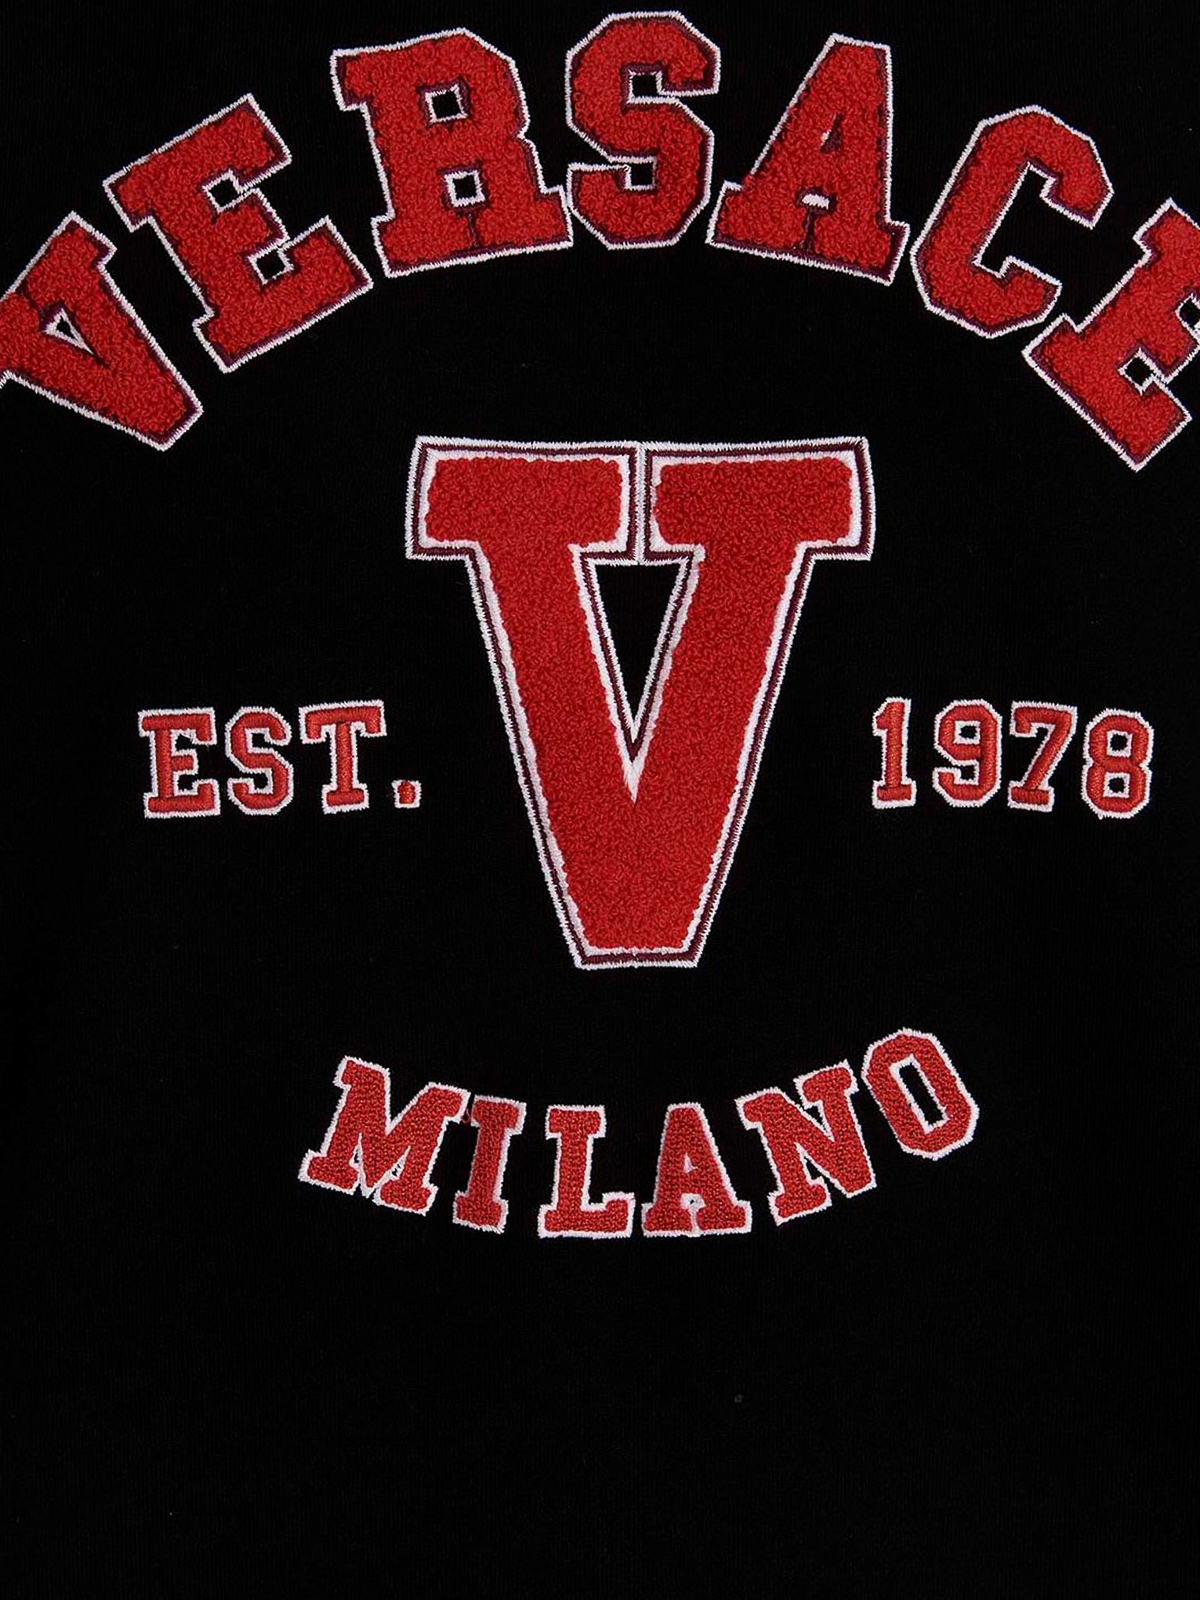 Shop Versace Logo Embroidery Hoodie In Black